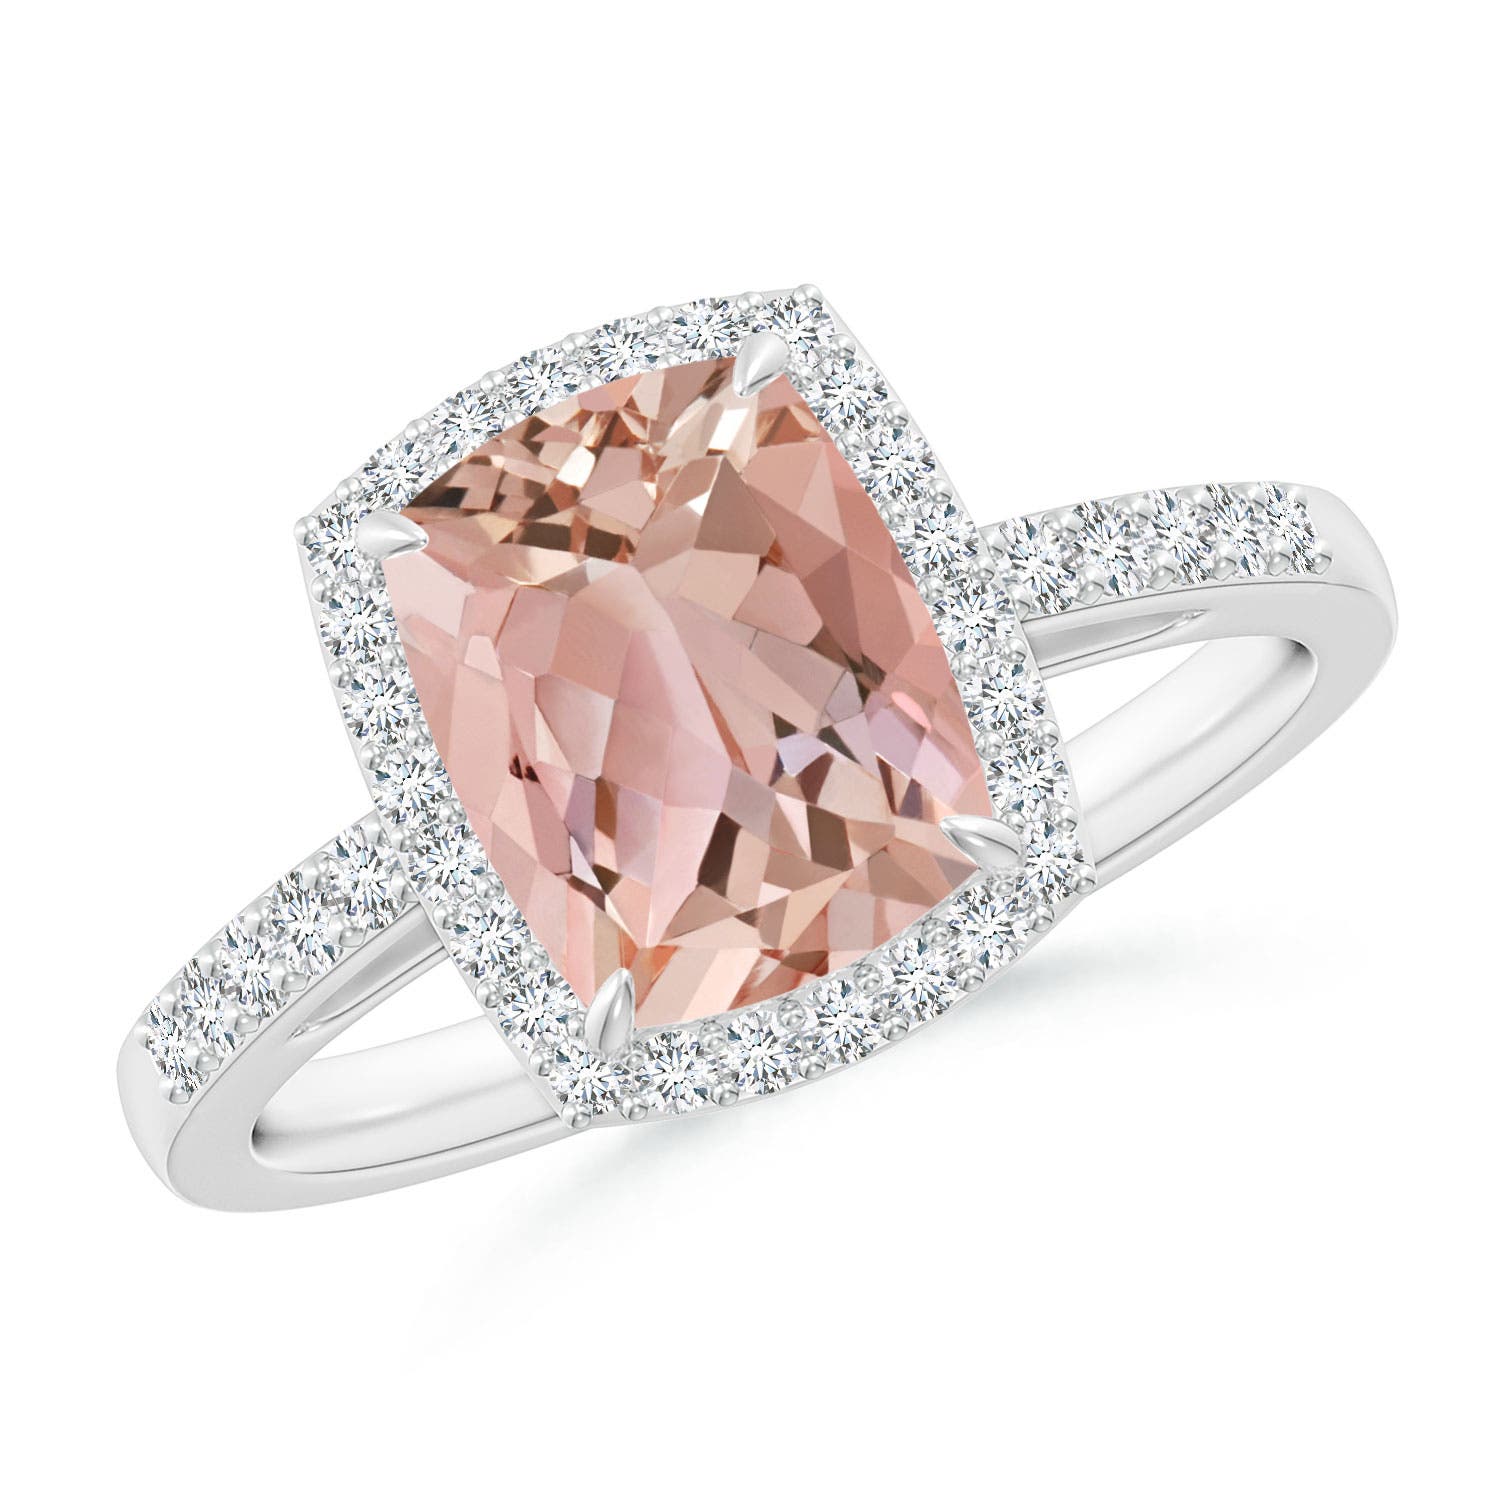 Pear morganite engagement ring | Custom Engagement Rings | Filigree wedding  ring, Beautiful engagement rings, Wholesale engagement rings